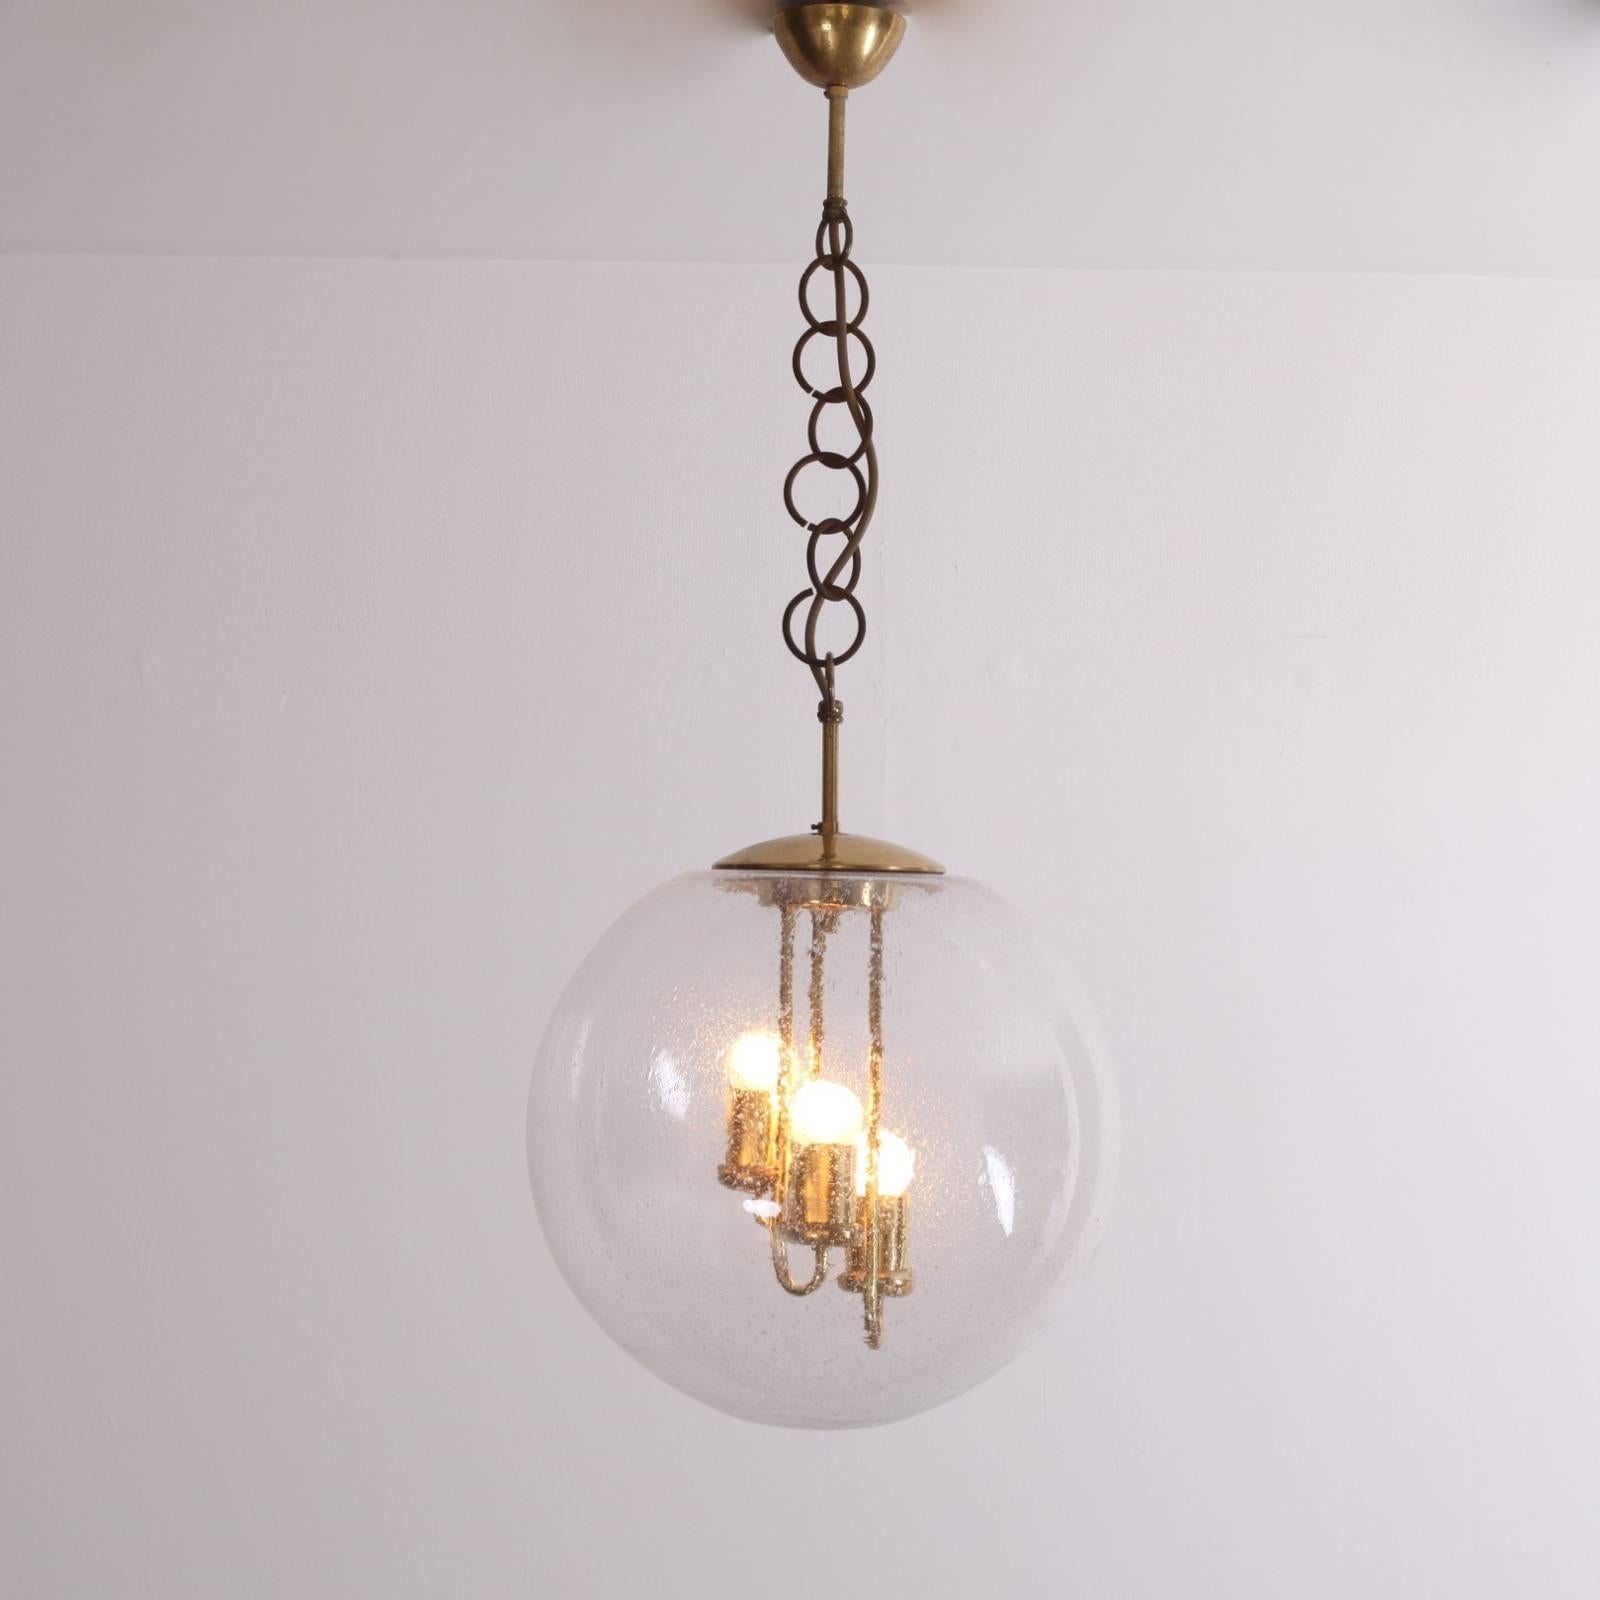 Hollywood Regency Huge Round Brass Sputnik Chandelier or Pendant Lamp by Doria For Sale